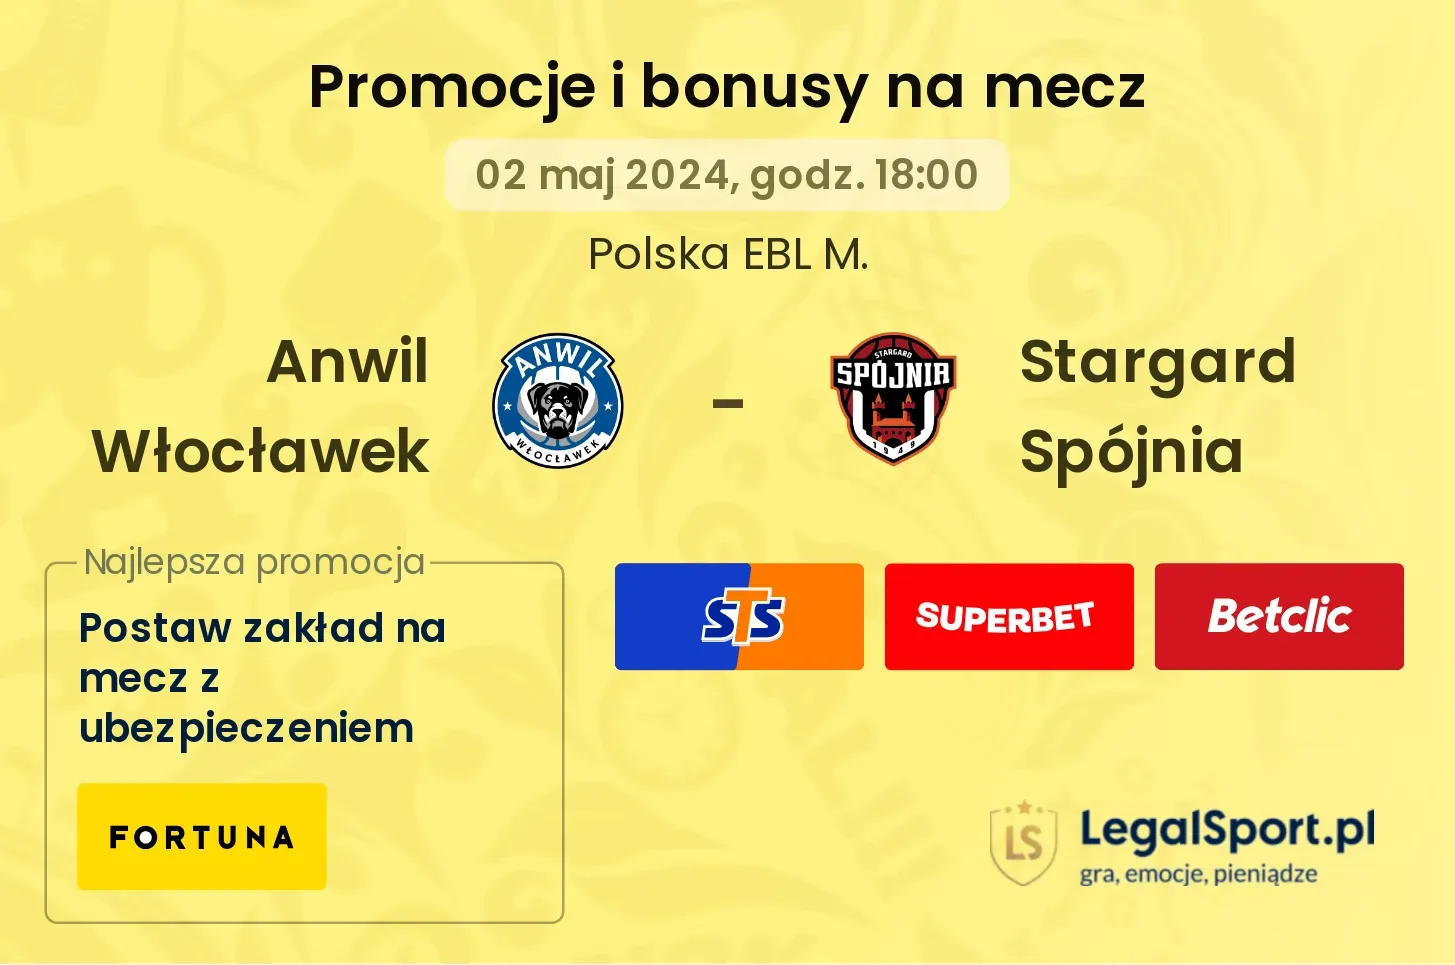 Anwil Włocławek - Stargard Spójnia promocje bonusy na mecz